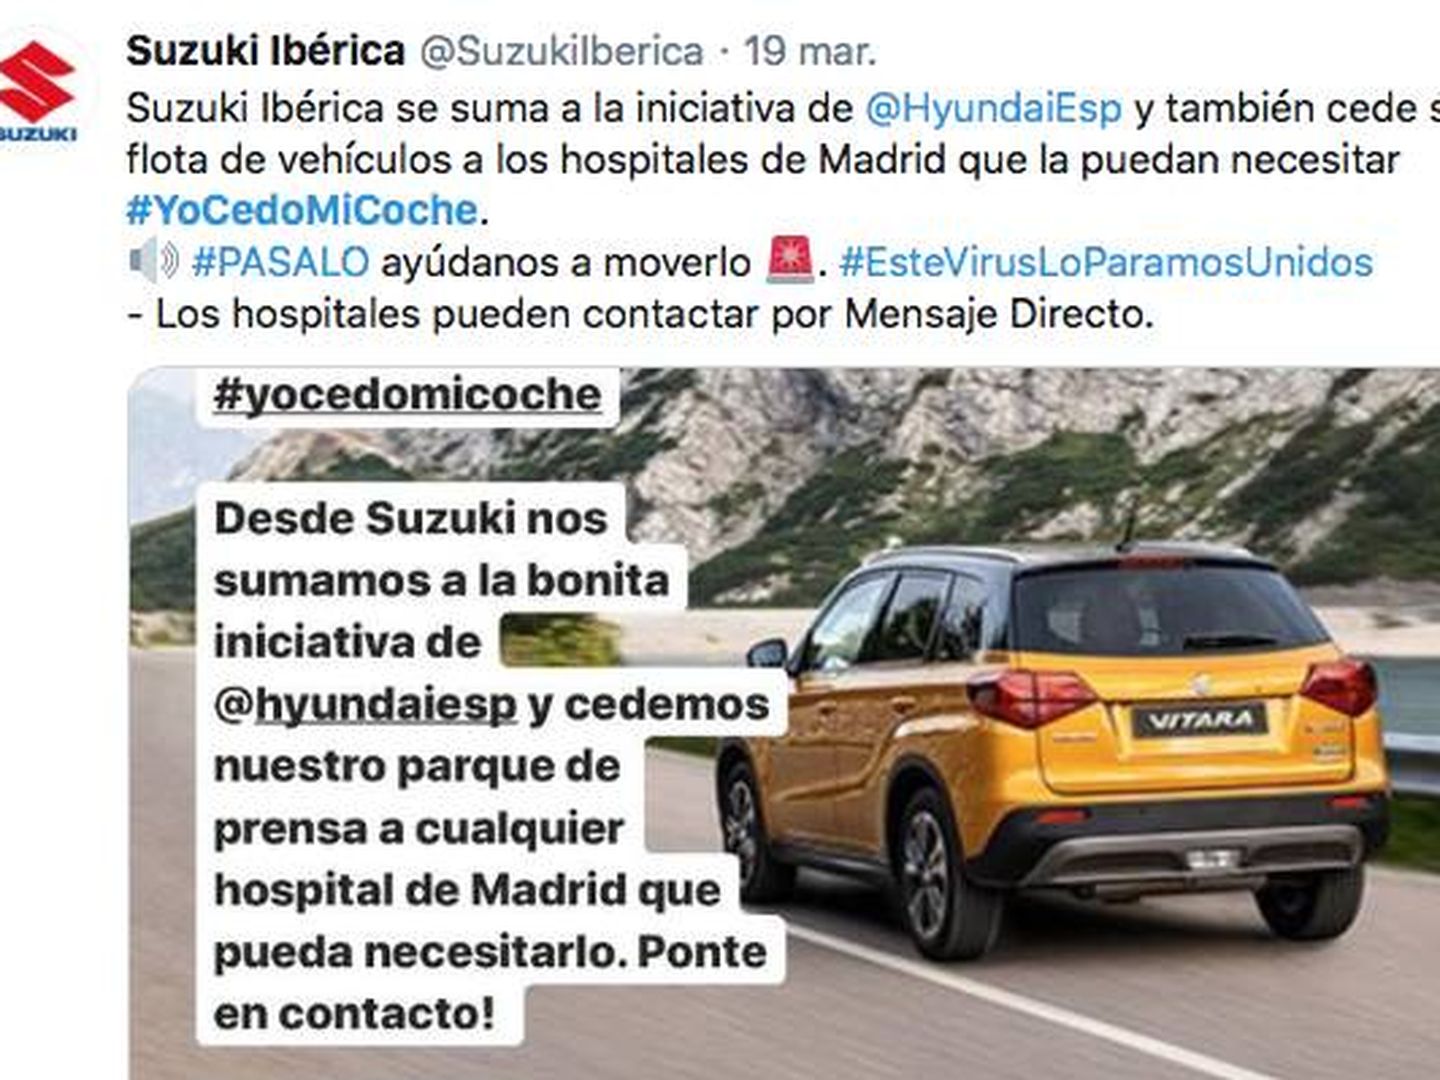 Mensaje de apoyo de Suzuki a la campaña #YoCedoMiCoche.